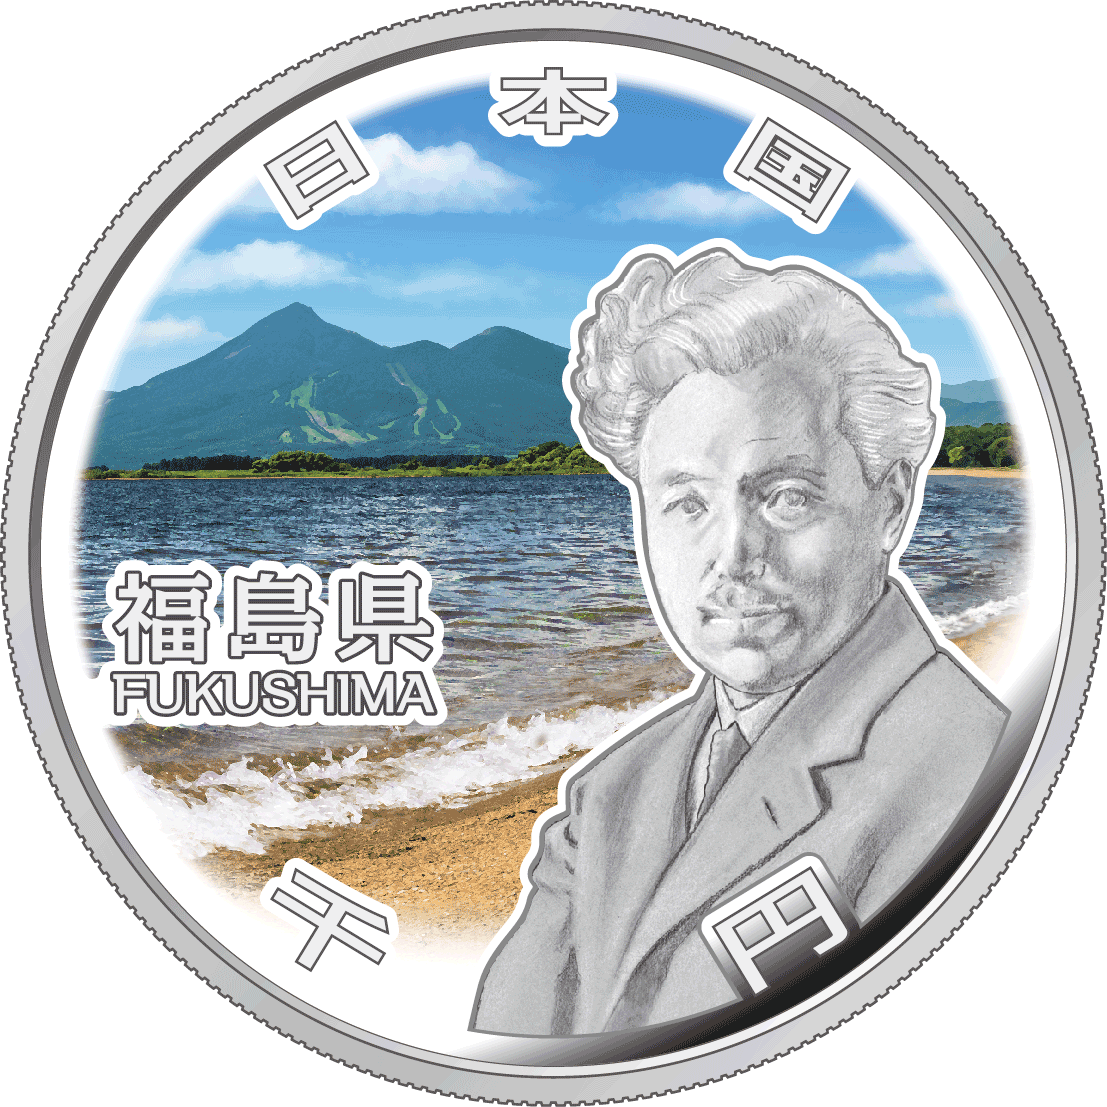 Image of Fukushima design of 1,000 yen